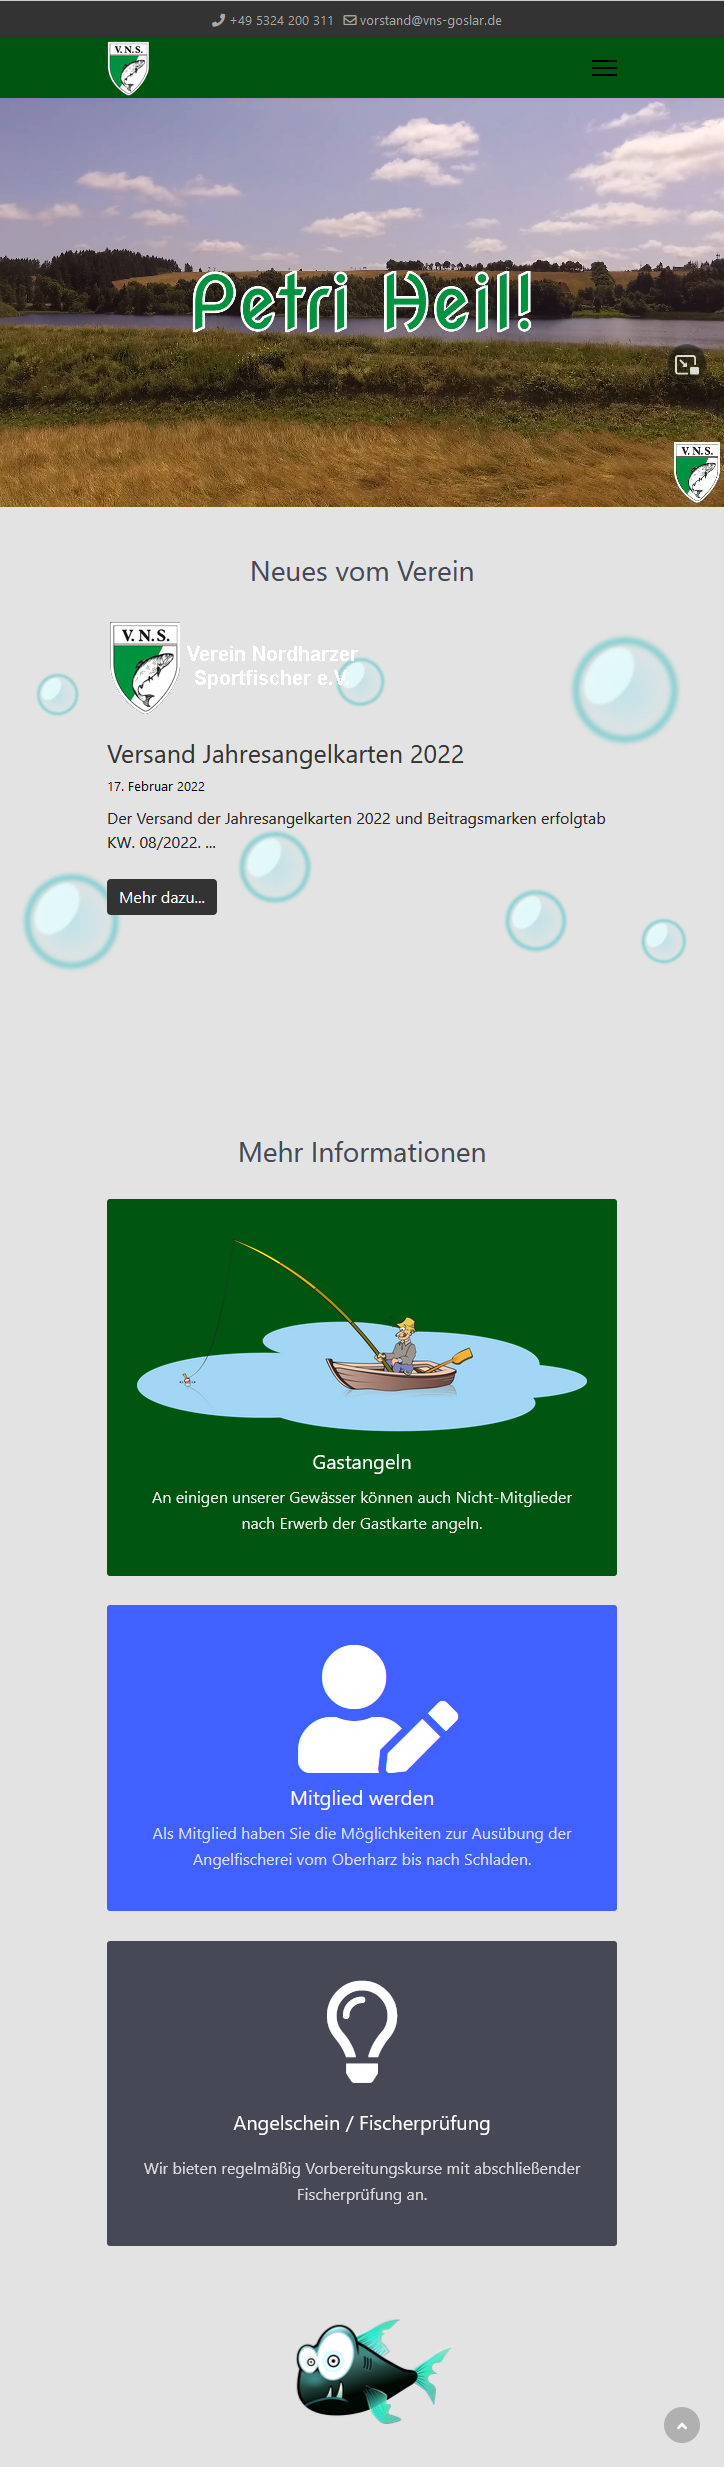 Dies ist ein Screentshot der Website vom Verein Nordharzer Sportfischer